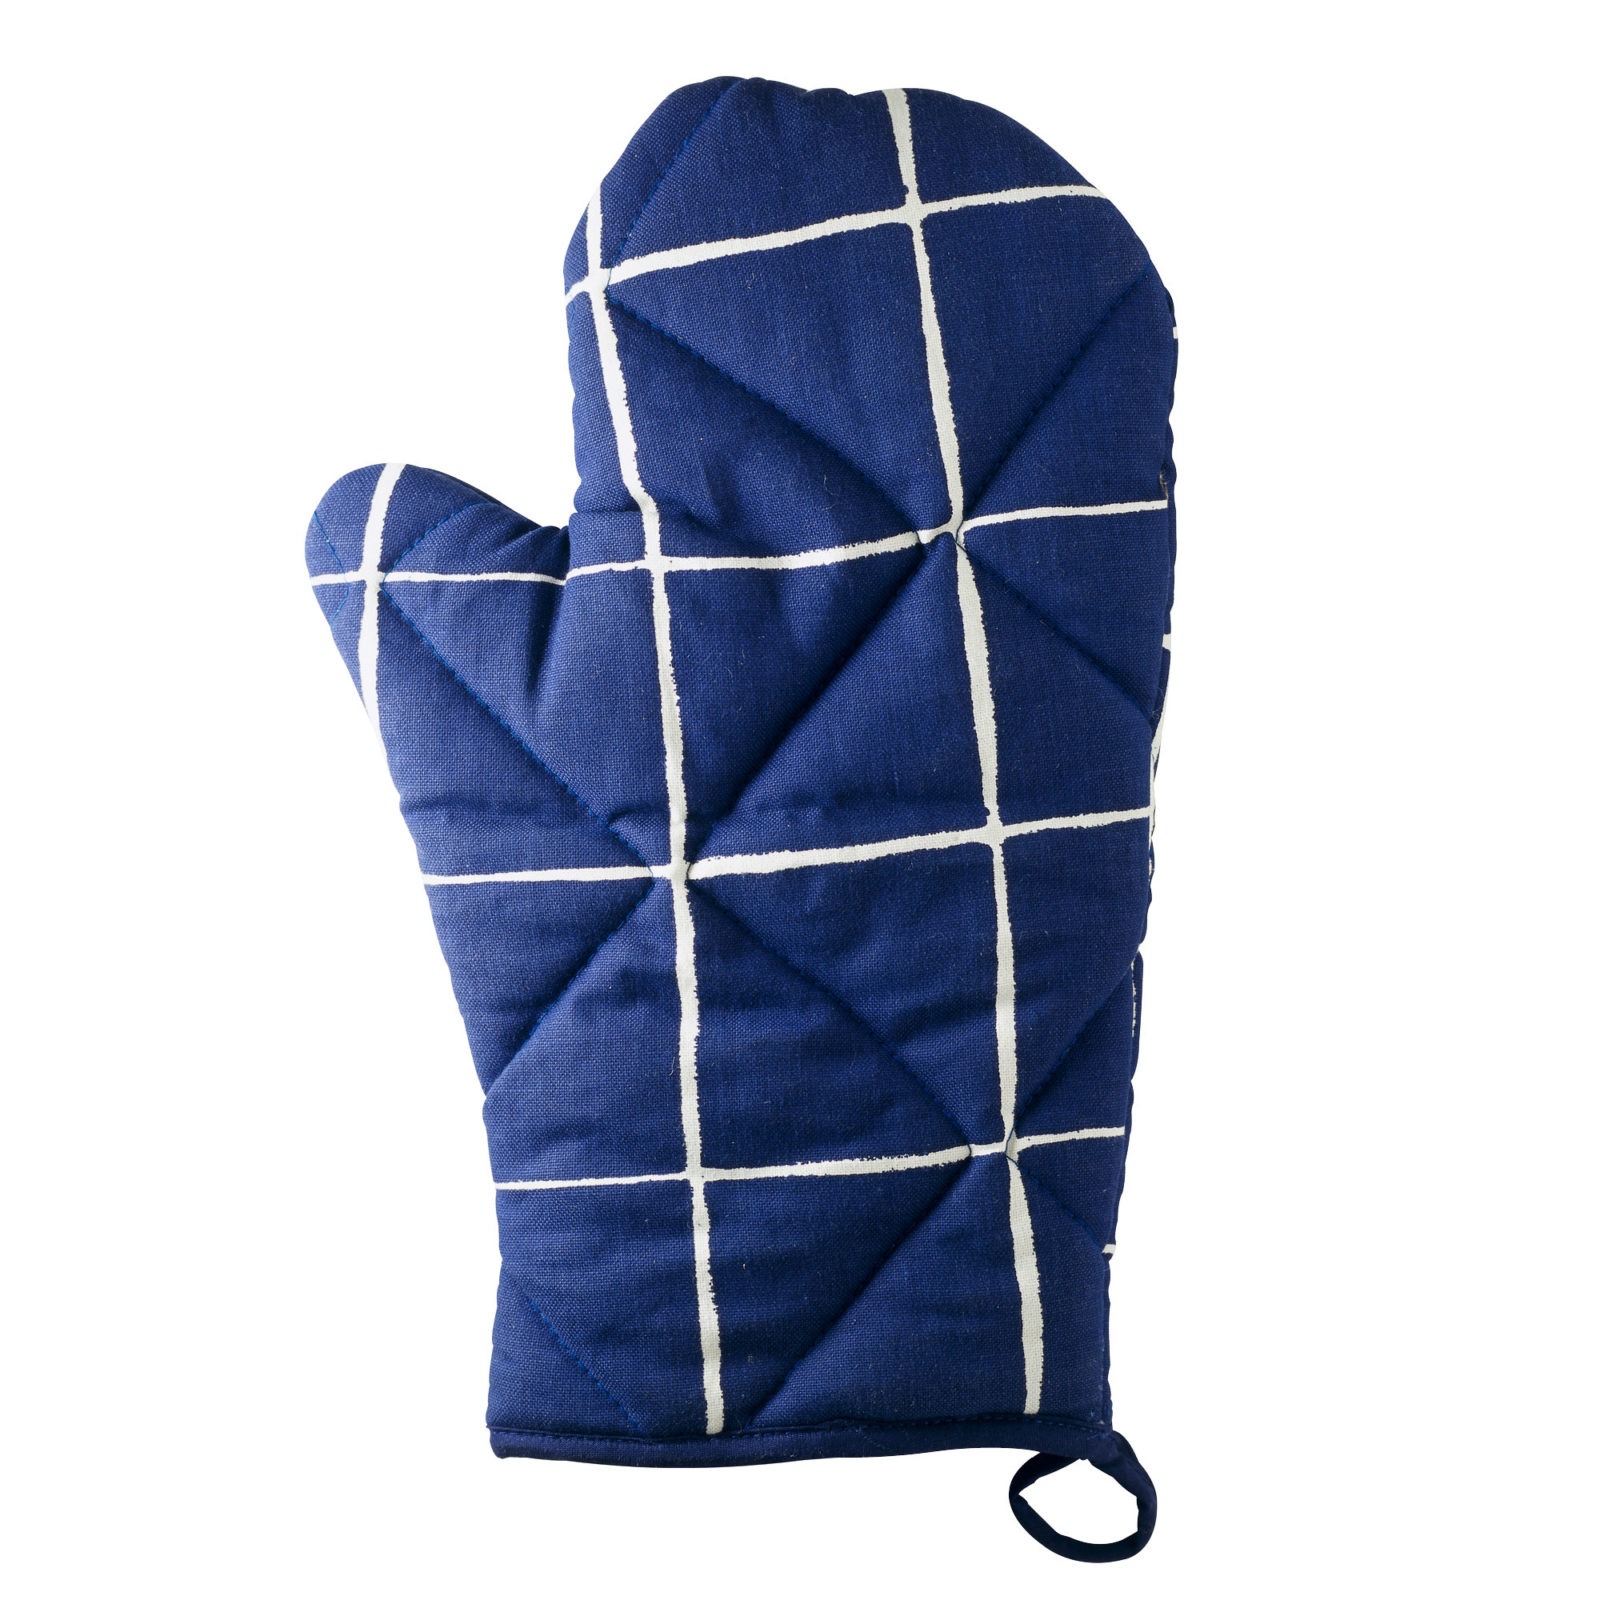 IKEA 365+ oven glove.